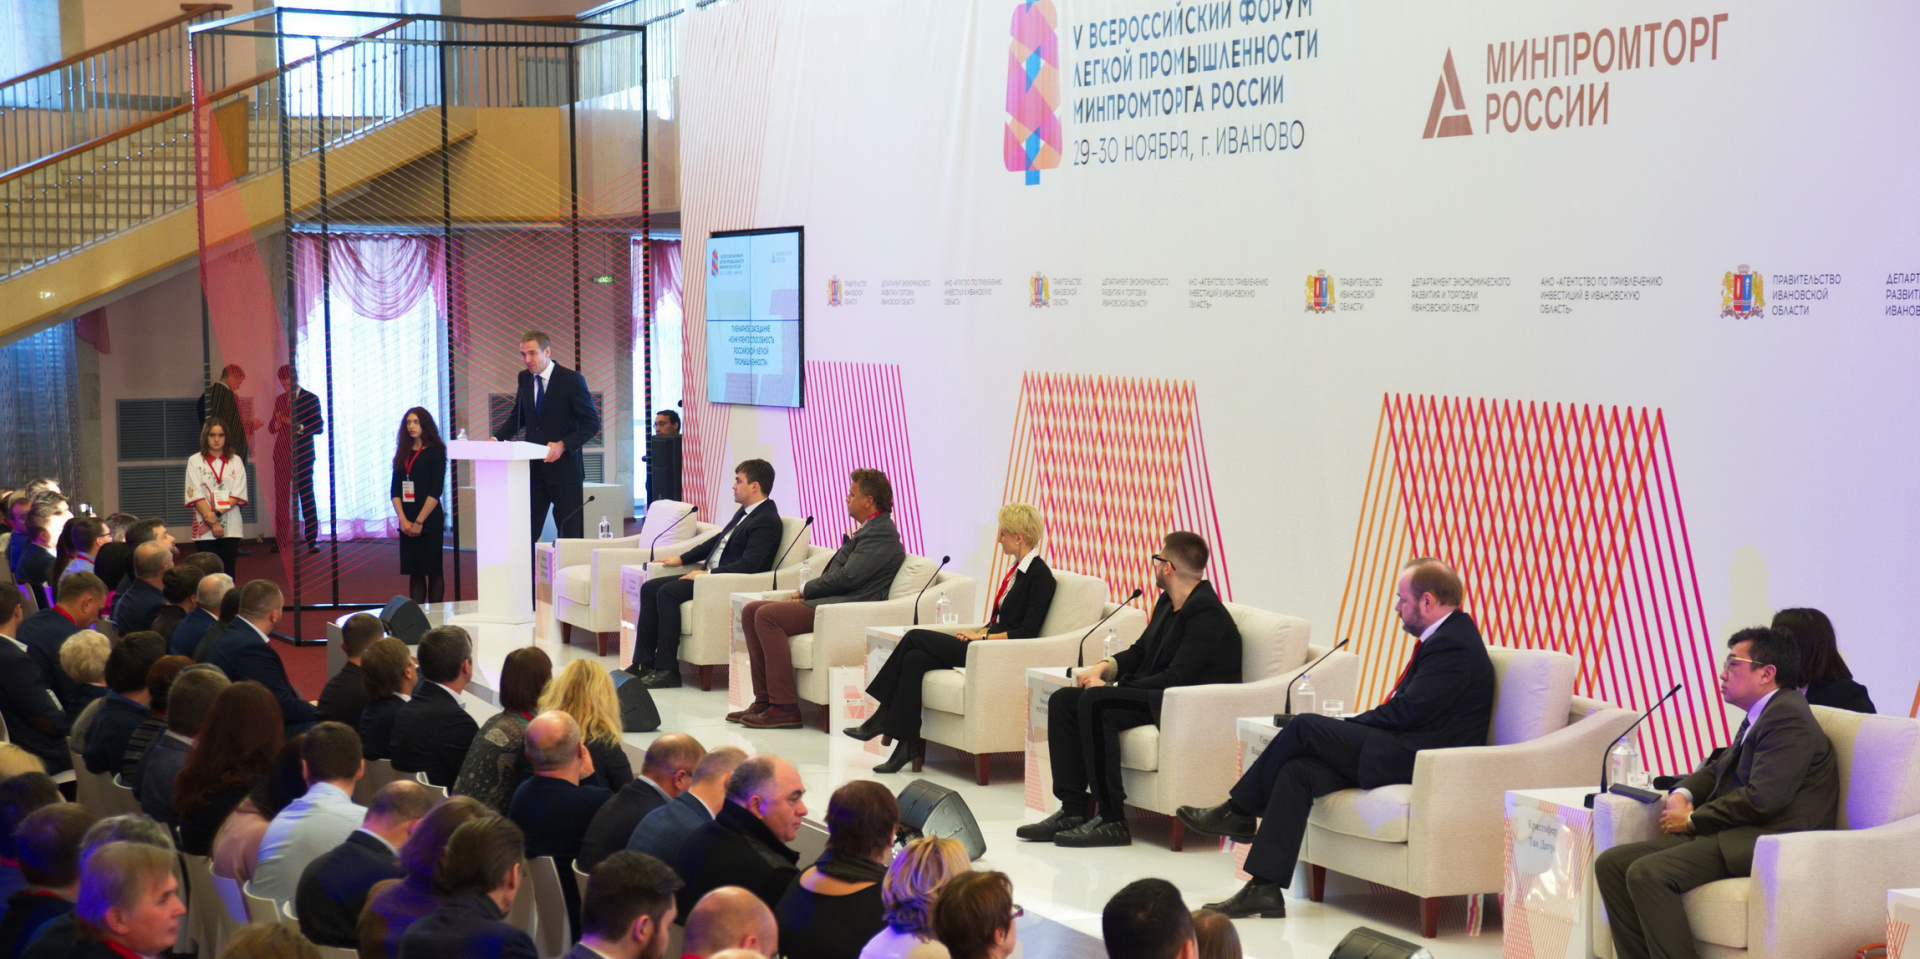 На форуме в Ивановской области подведены итоги и намечены планы развития российской легкой промышленности (ВИДЕО)